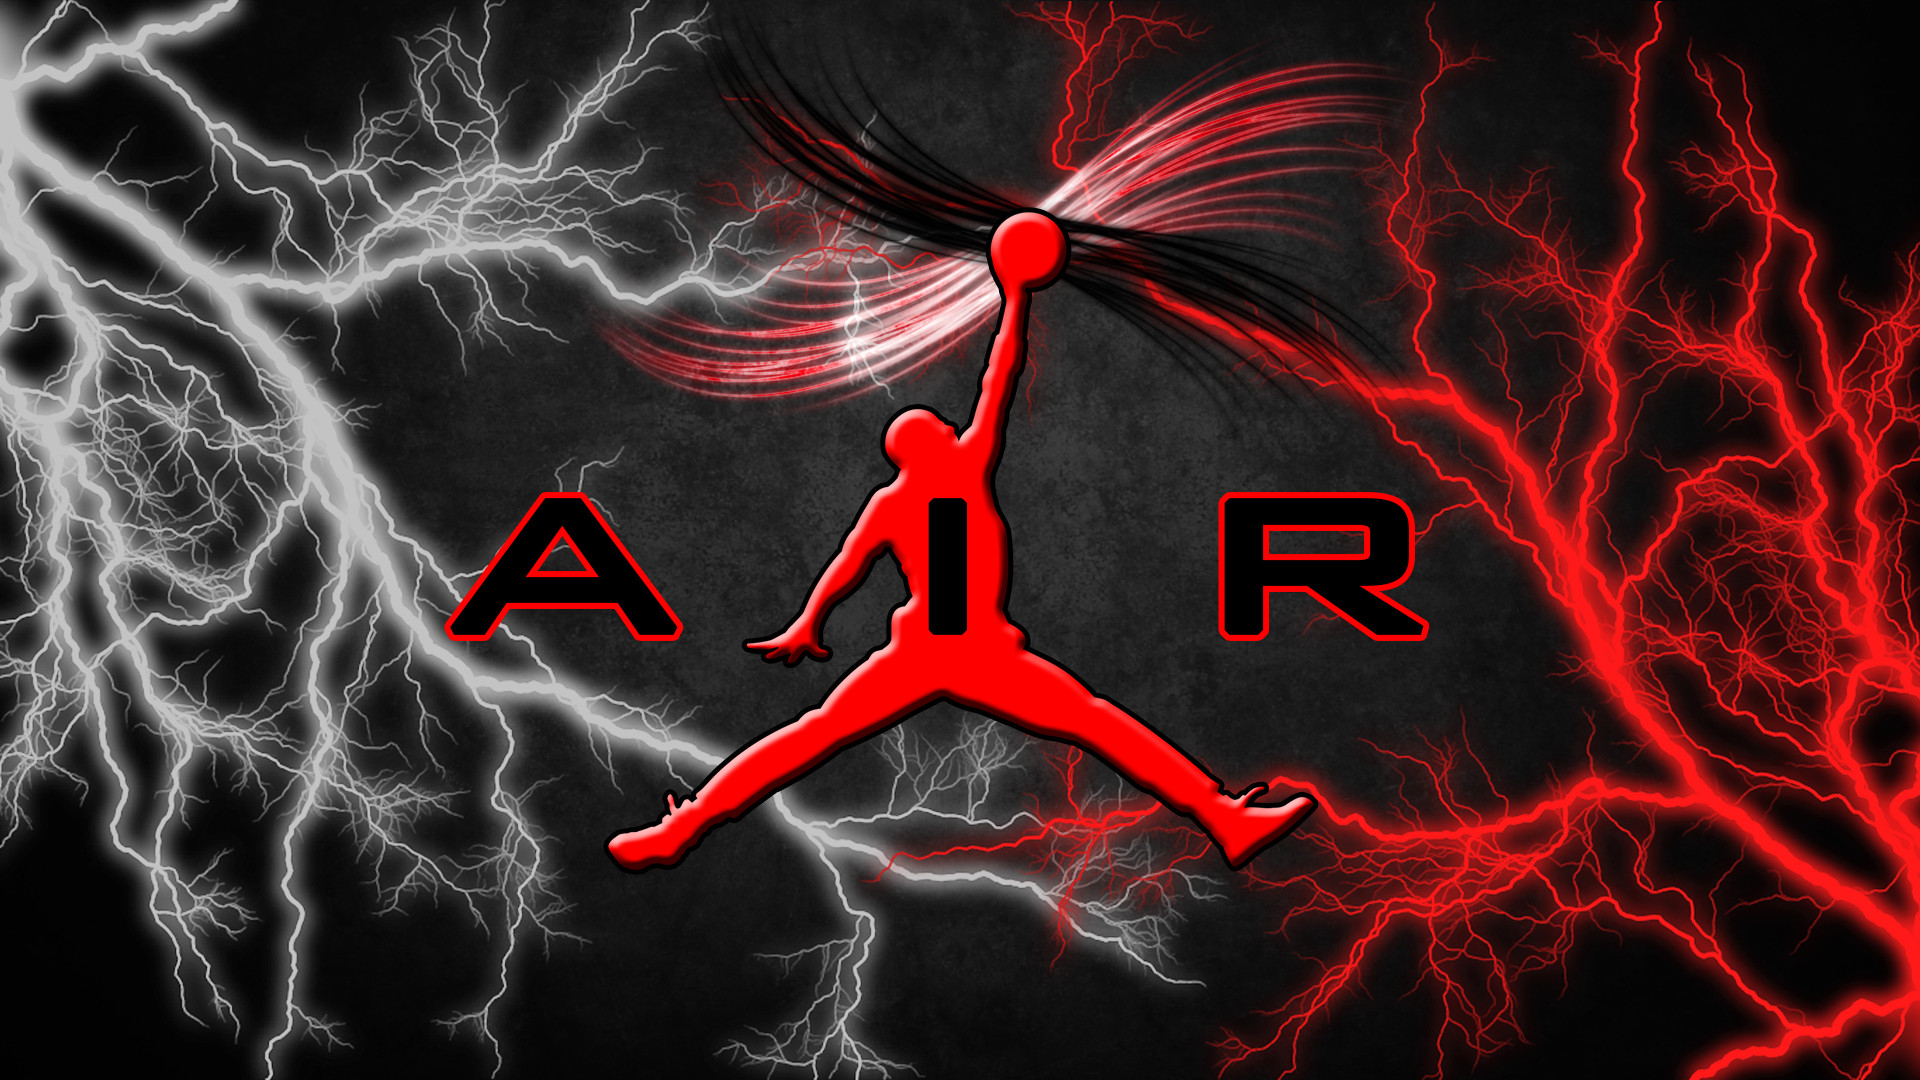 Air Jordan Jumpman by AceTheIceman on